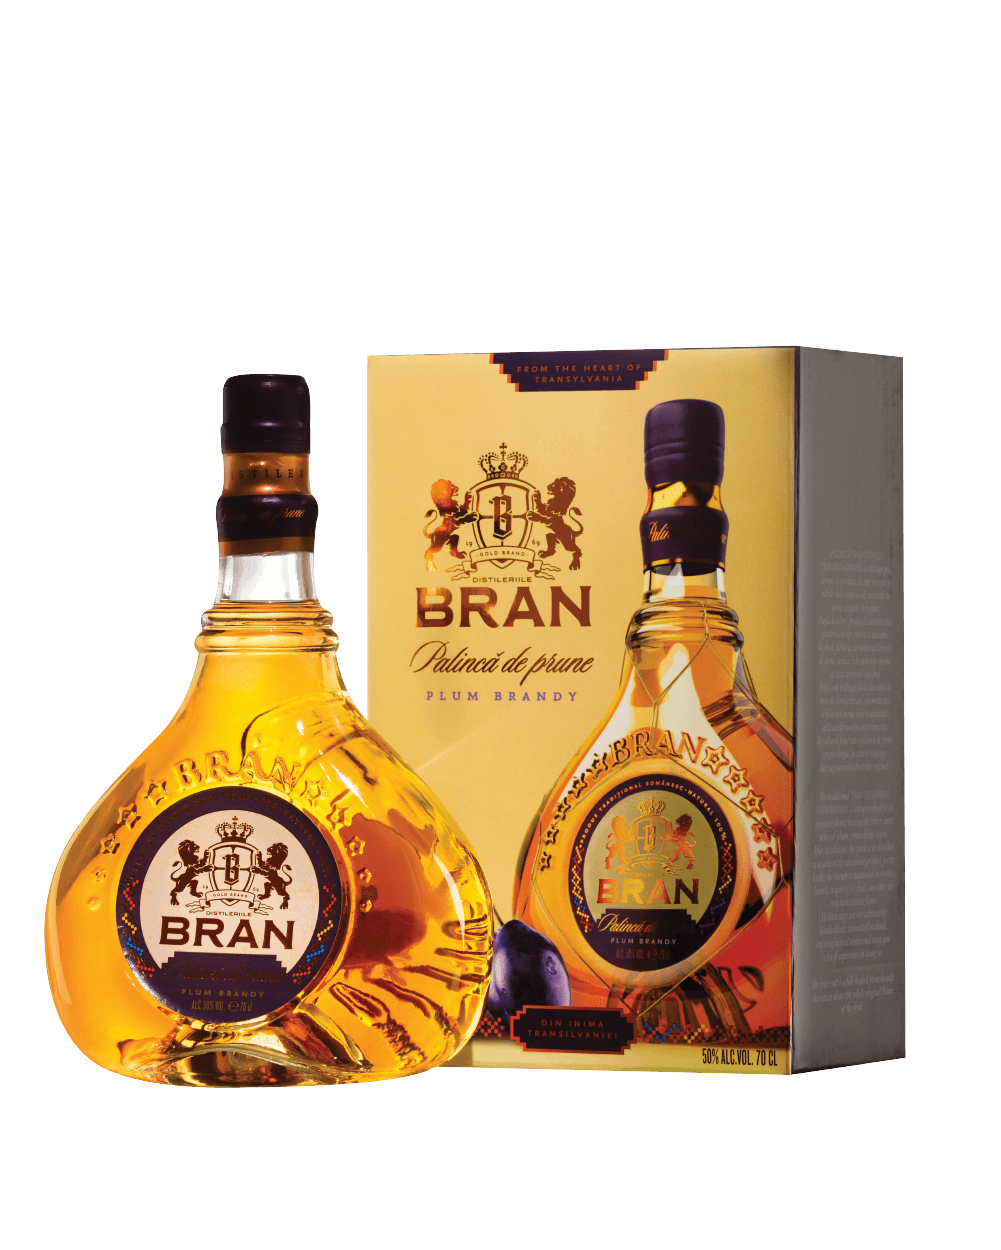 Plum Brandy - Bran Distilleries - Presentation Box